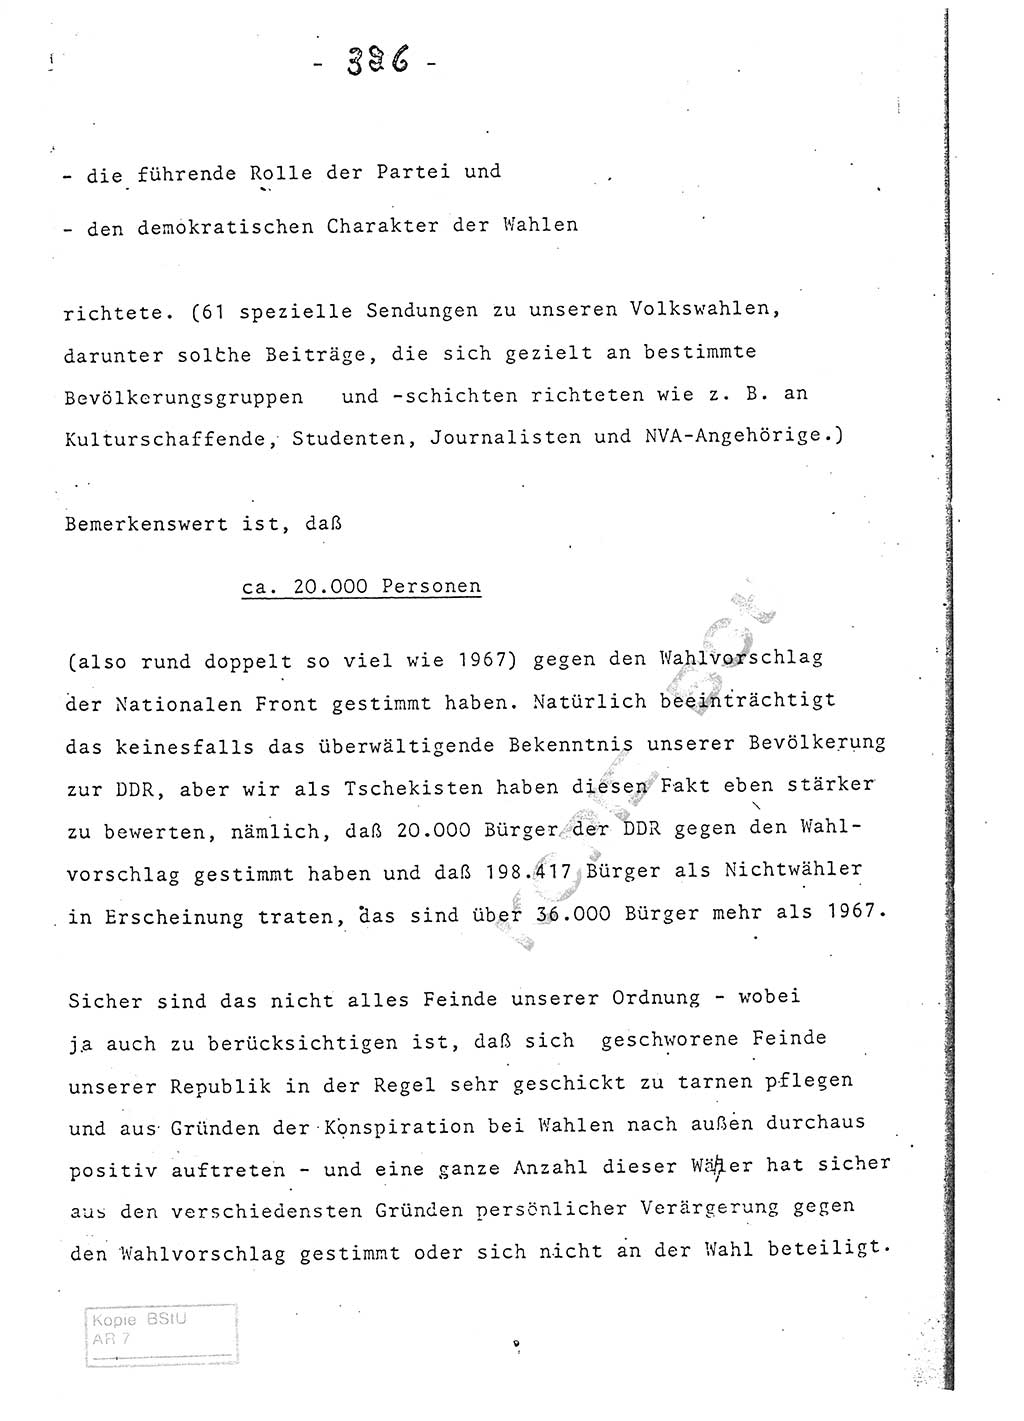 Referat (Entwurf) des Genossen Minister (Generaloberst Erich Mielke) auf der Dienstkonferenz 1972, Ministerium für Staatssicherheit (MfS) [Deutsche Demokratische Republik (DDR)], Der Minister, Geheime Verschlußsache (GVS) 008-150/72, Berlin 25.2.1972, Seite 326 (Ref. Entw. DK MfS DDR Min. GVS 008-150/72 1972, S. 326)